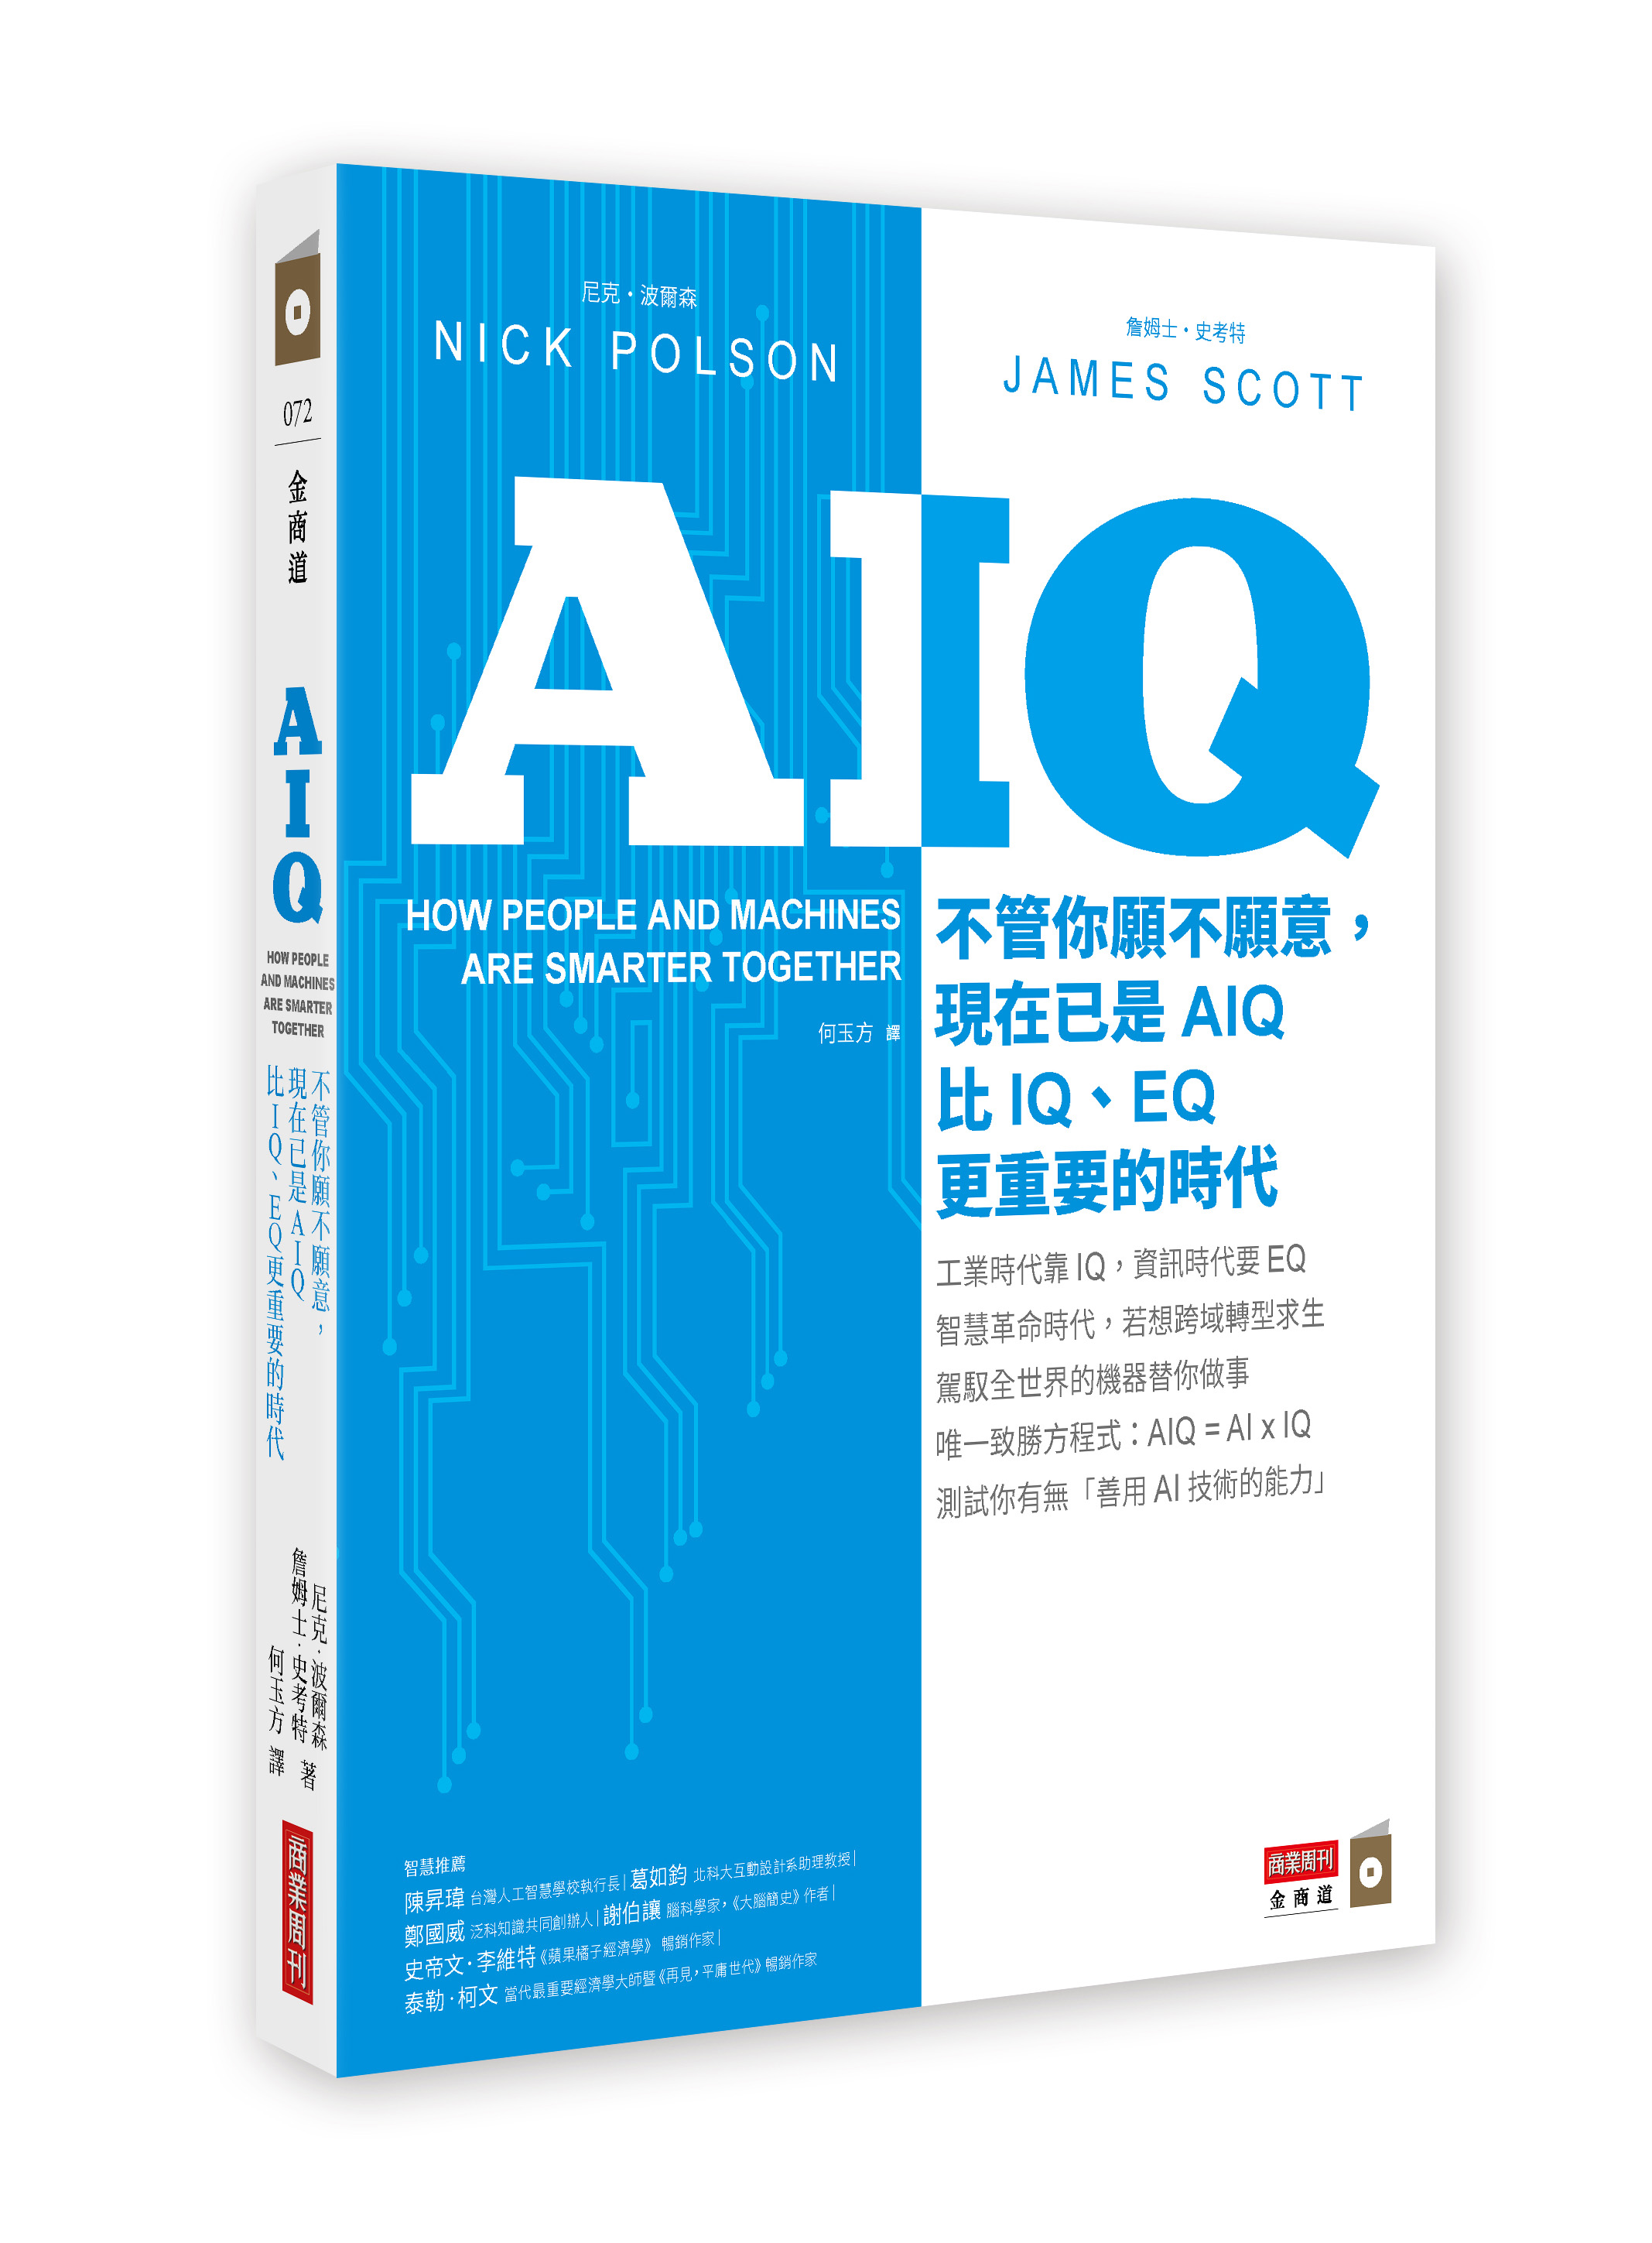 AIQ：不管你願不願意，現在已是AIQ比IQ、EQ更重要的時代